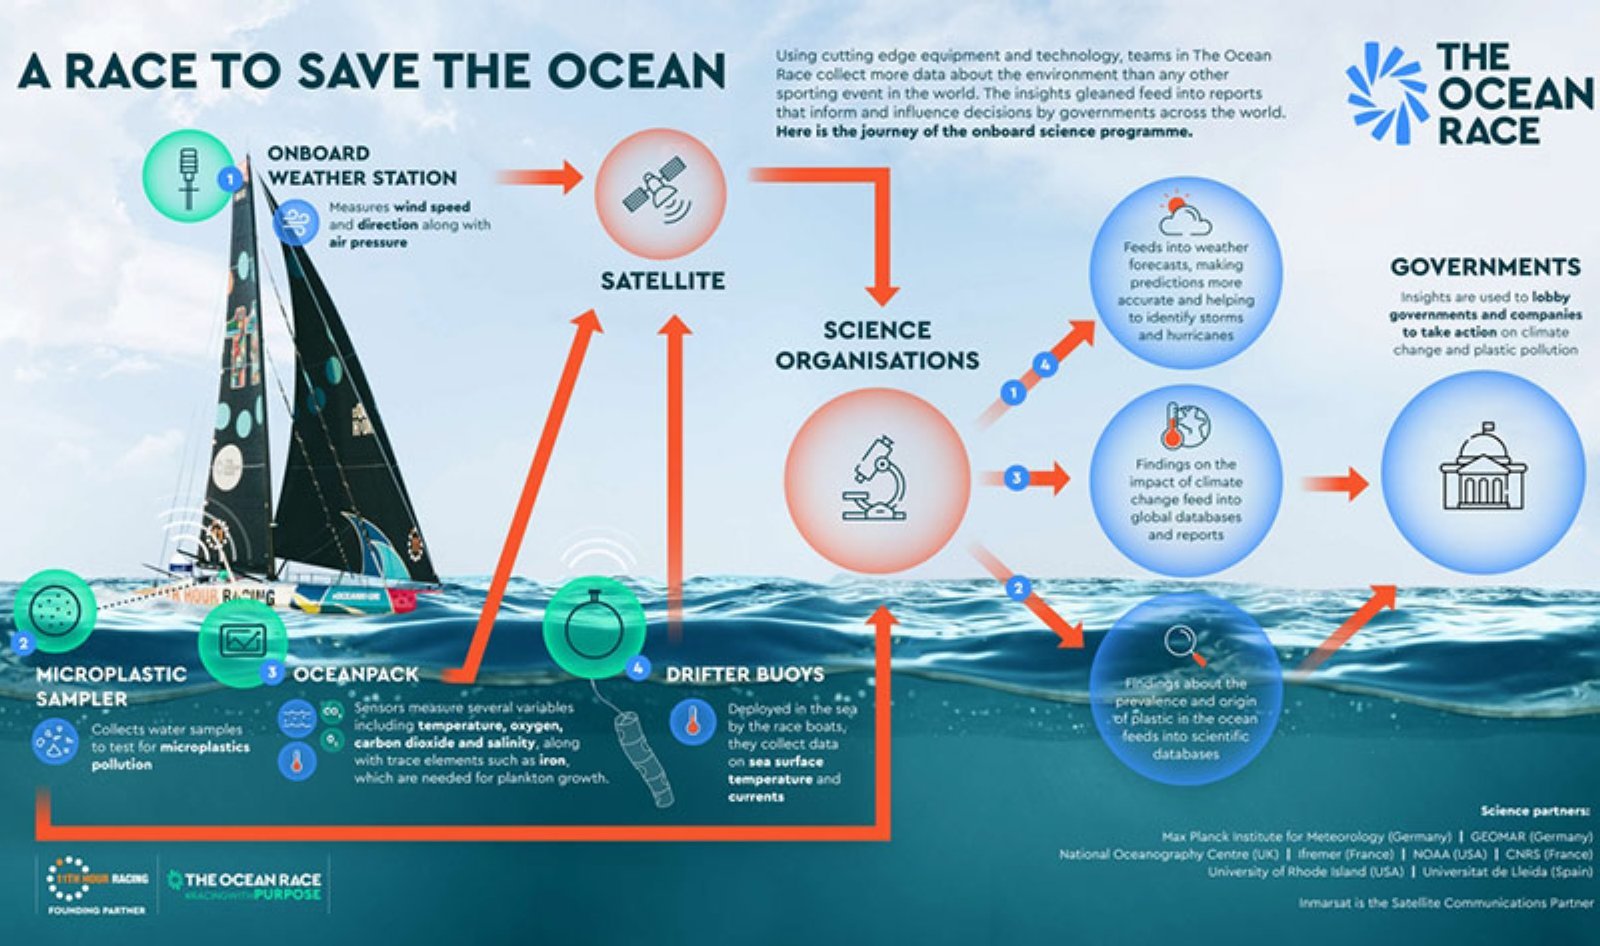 The Ocean Race recopilará datos sobre el medio ambiente